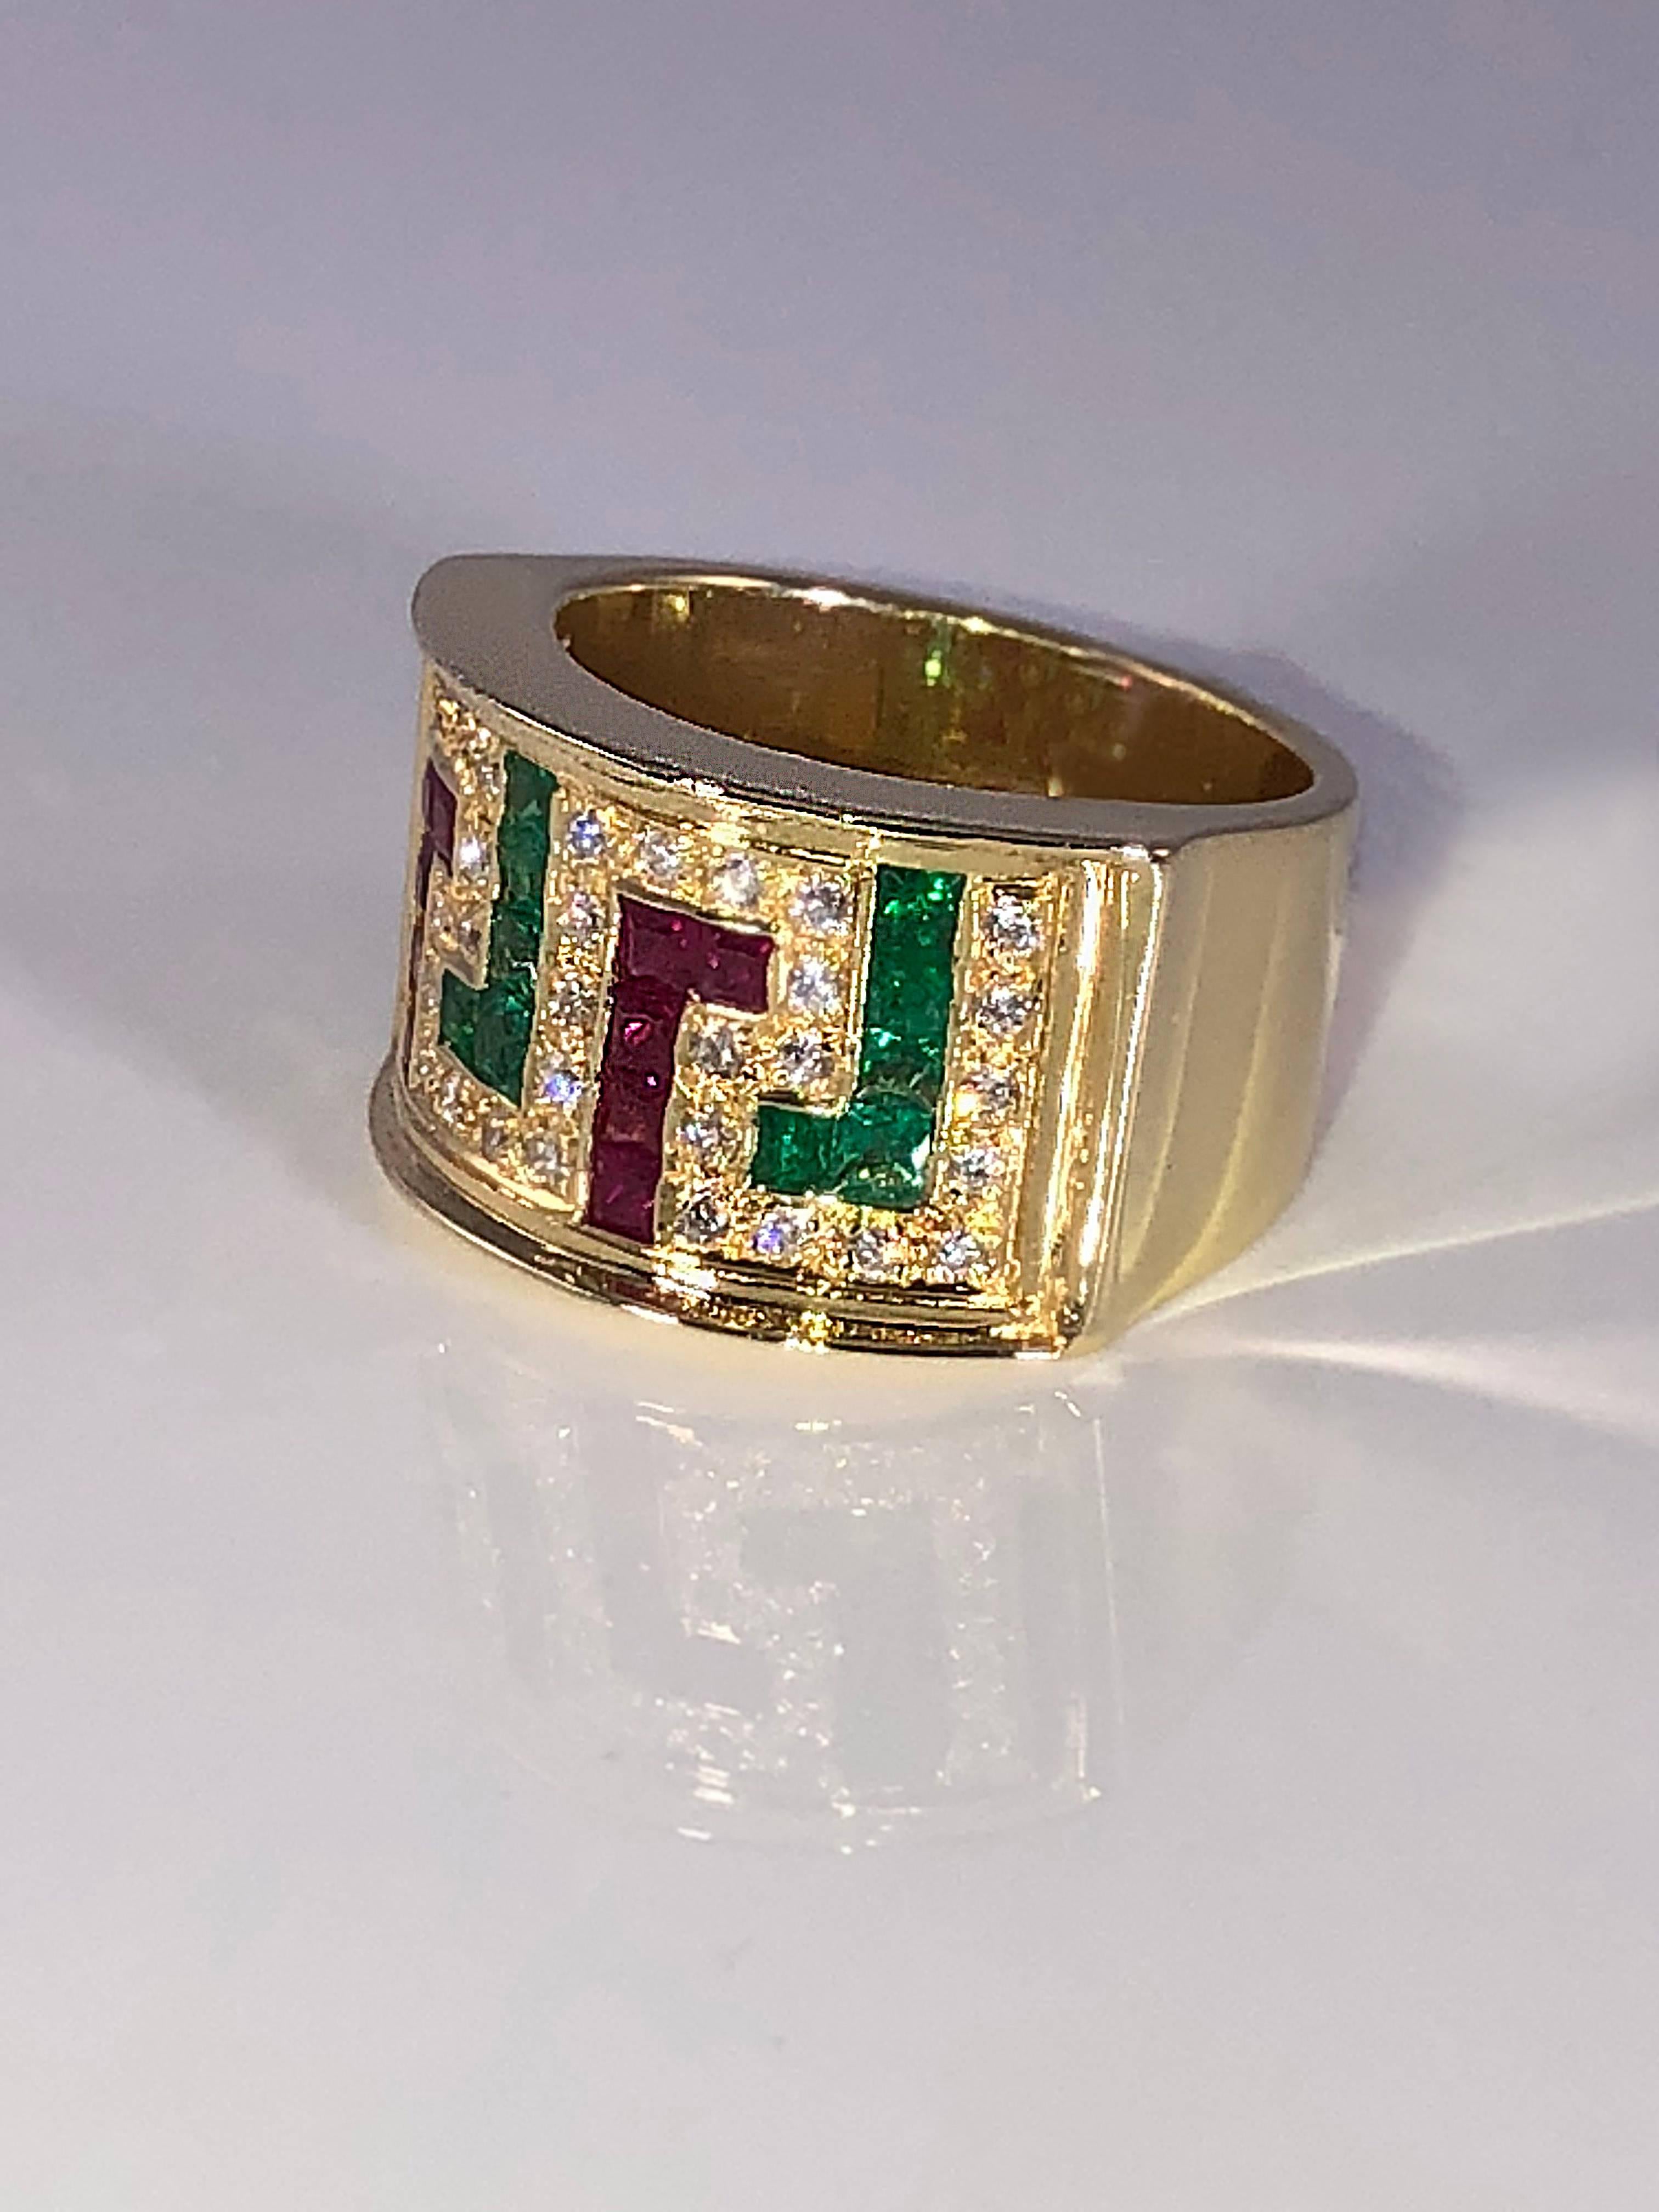 S.Georgios Designer-Ring aus 18 Karat Gelbgold mit dem griechischen Schlüssel als Symbol für die Ewigkeit. Der Ring ist komplett handgefertigt und hat weiße Diamanten im Brillantschliff mit einem Gesamtgewicht von 0,40 Karat und Rubine und Smaragde